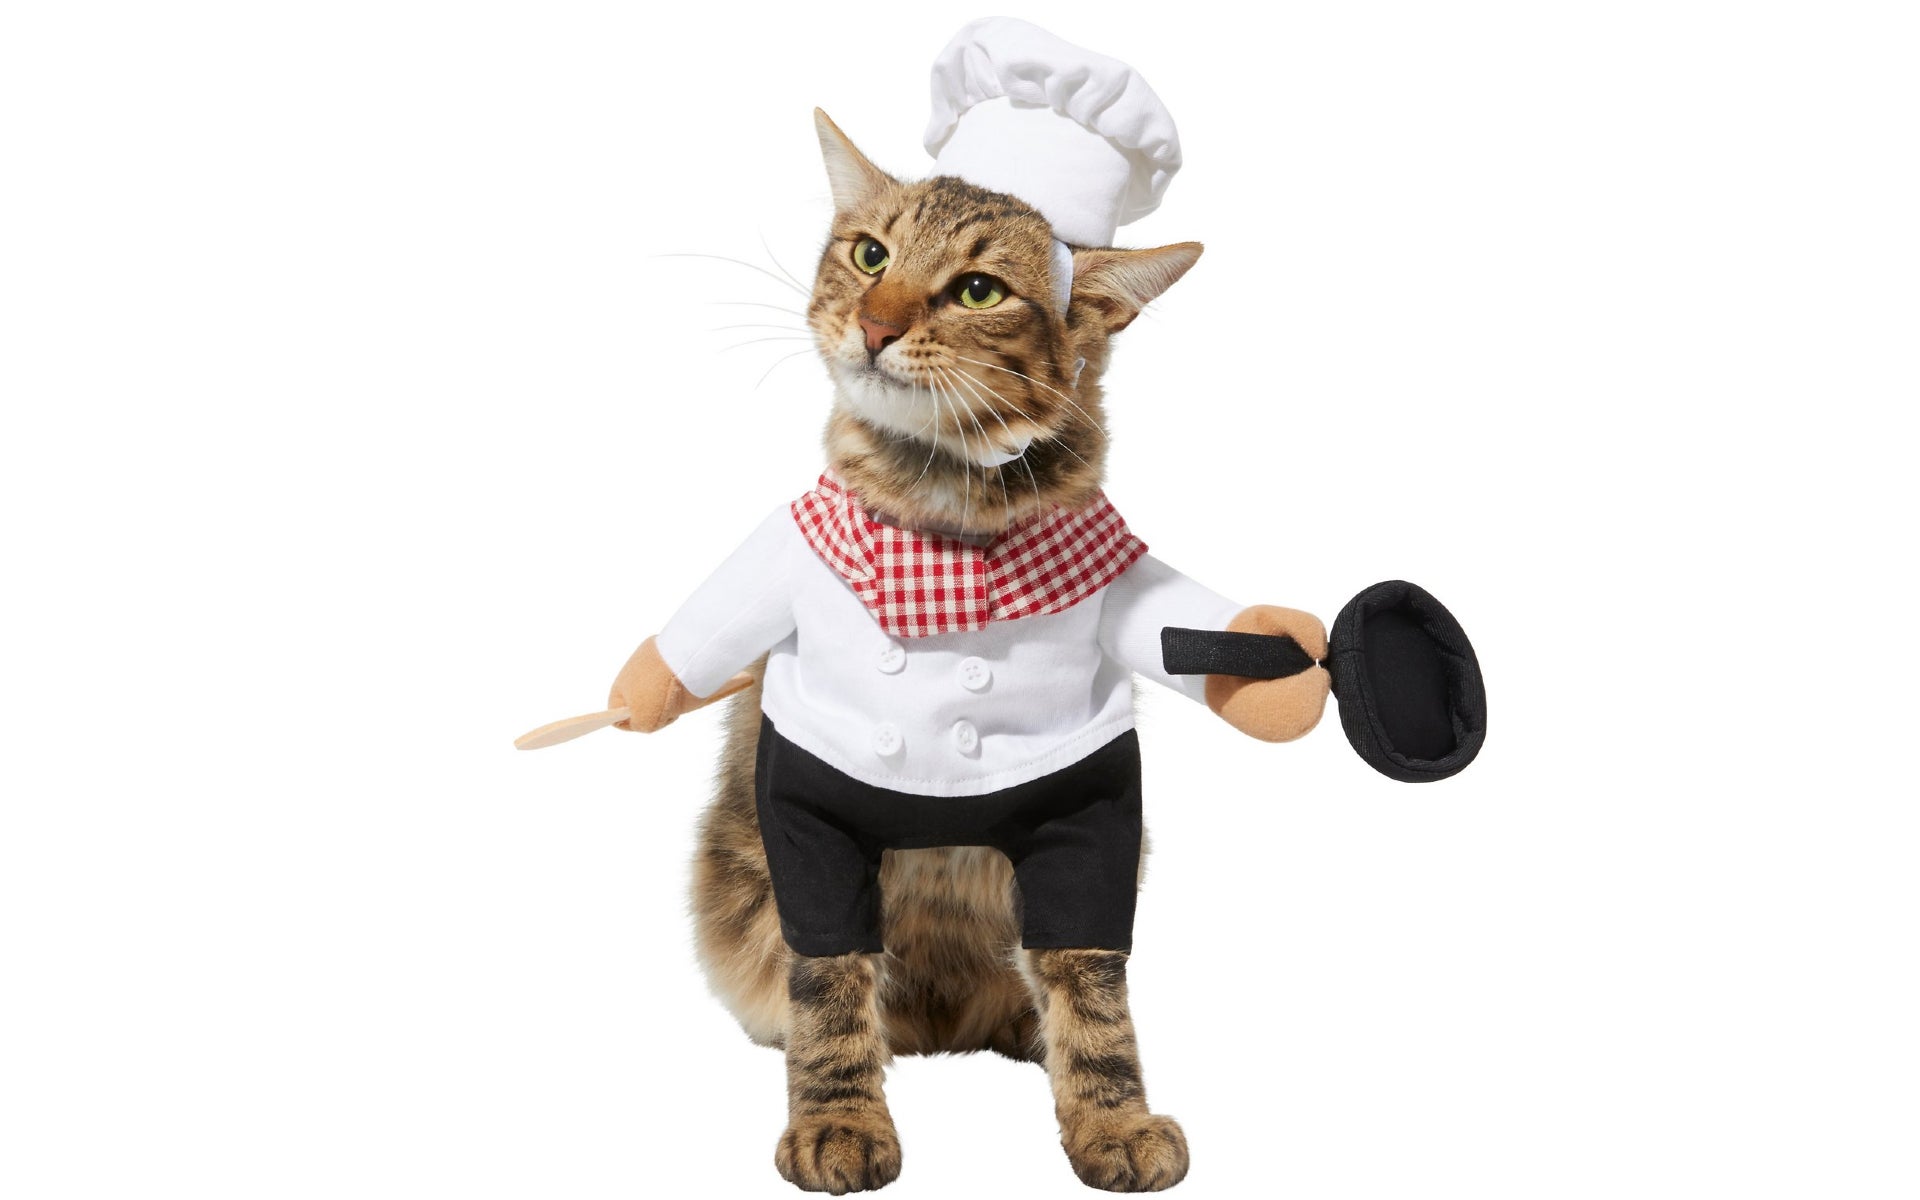 Cat in chef costume